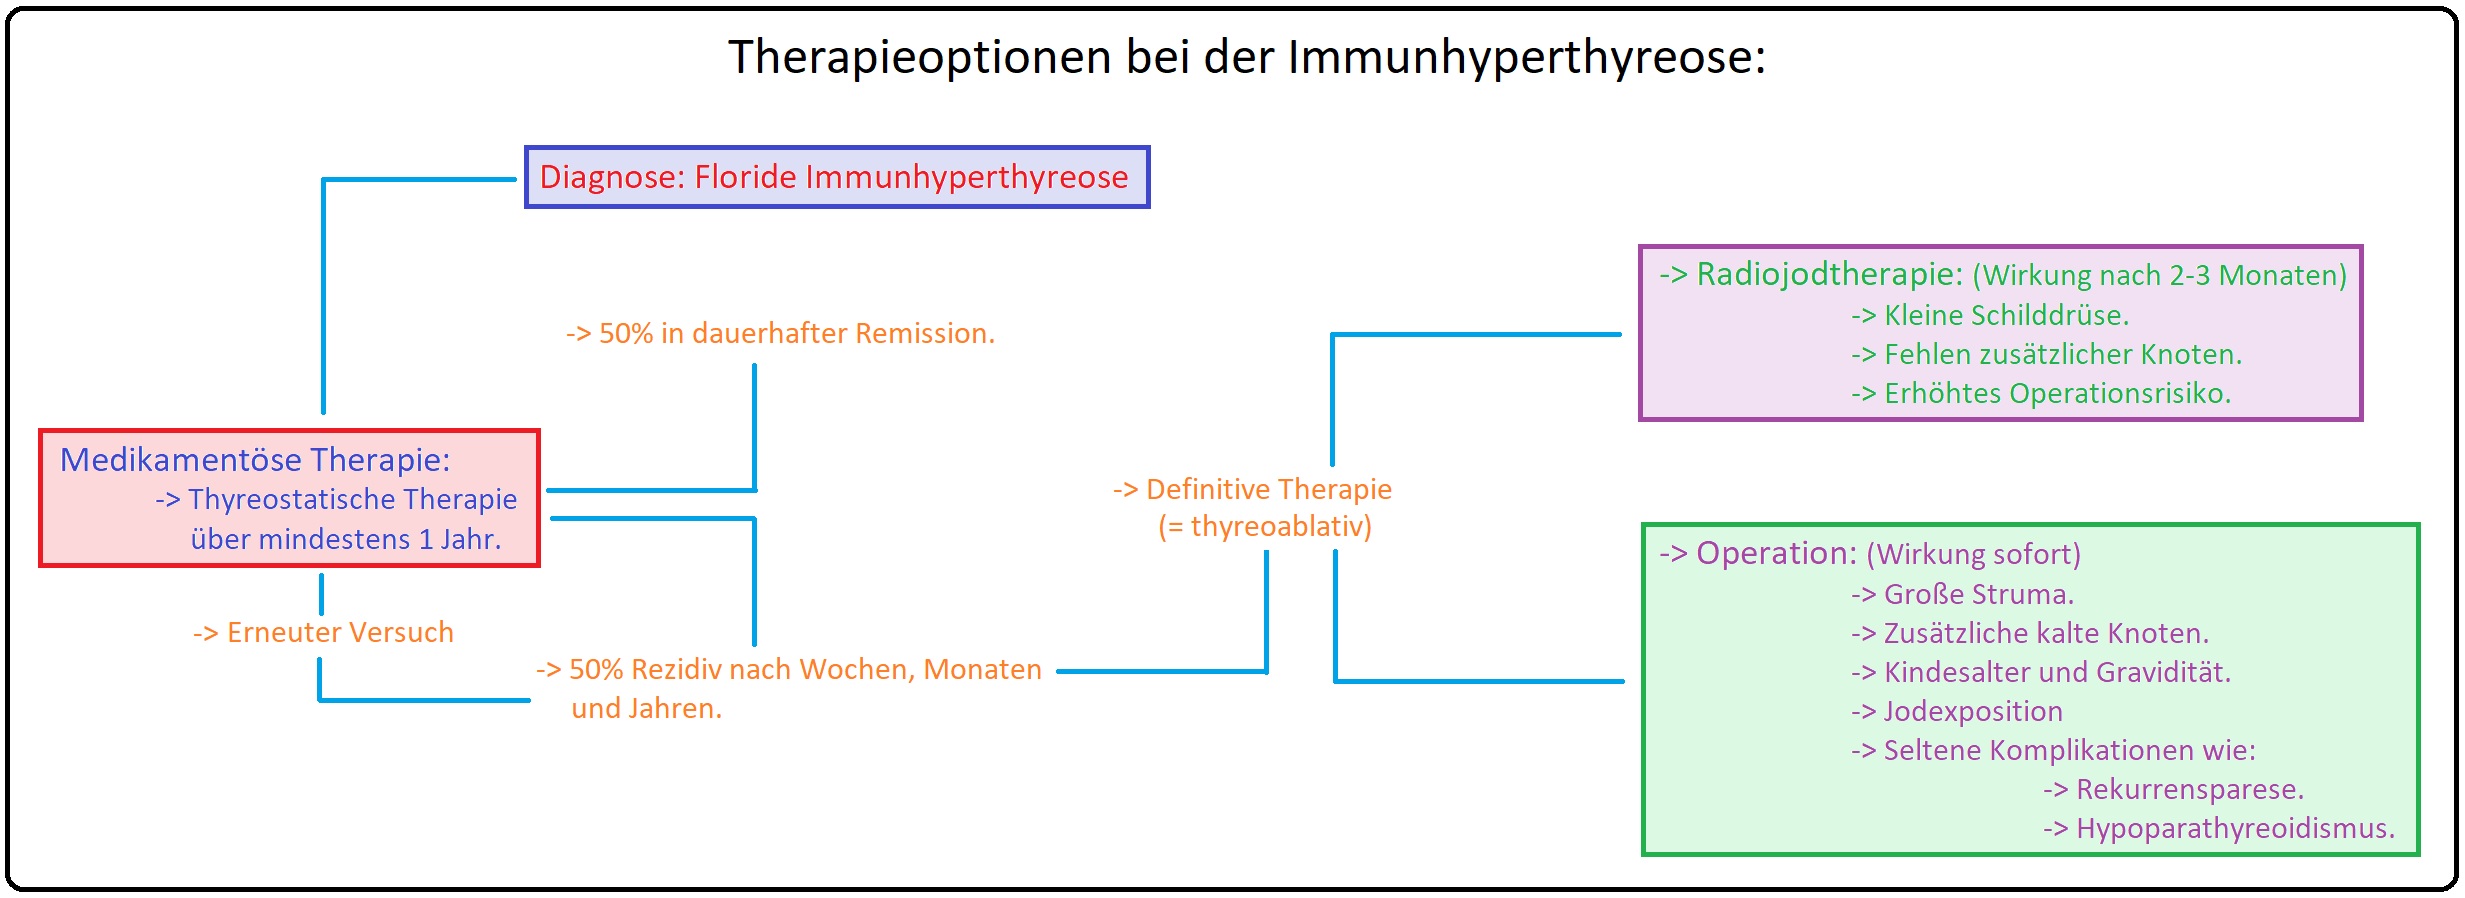 681 Therapieoptionen bei der Immunhyperthyreose